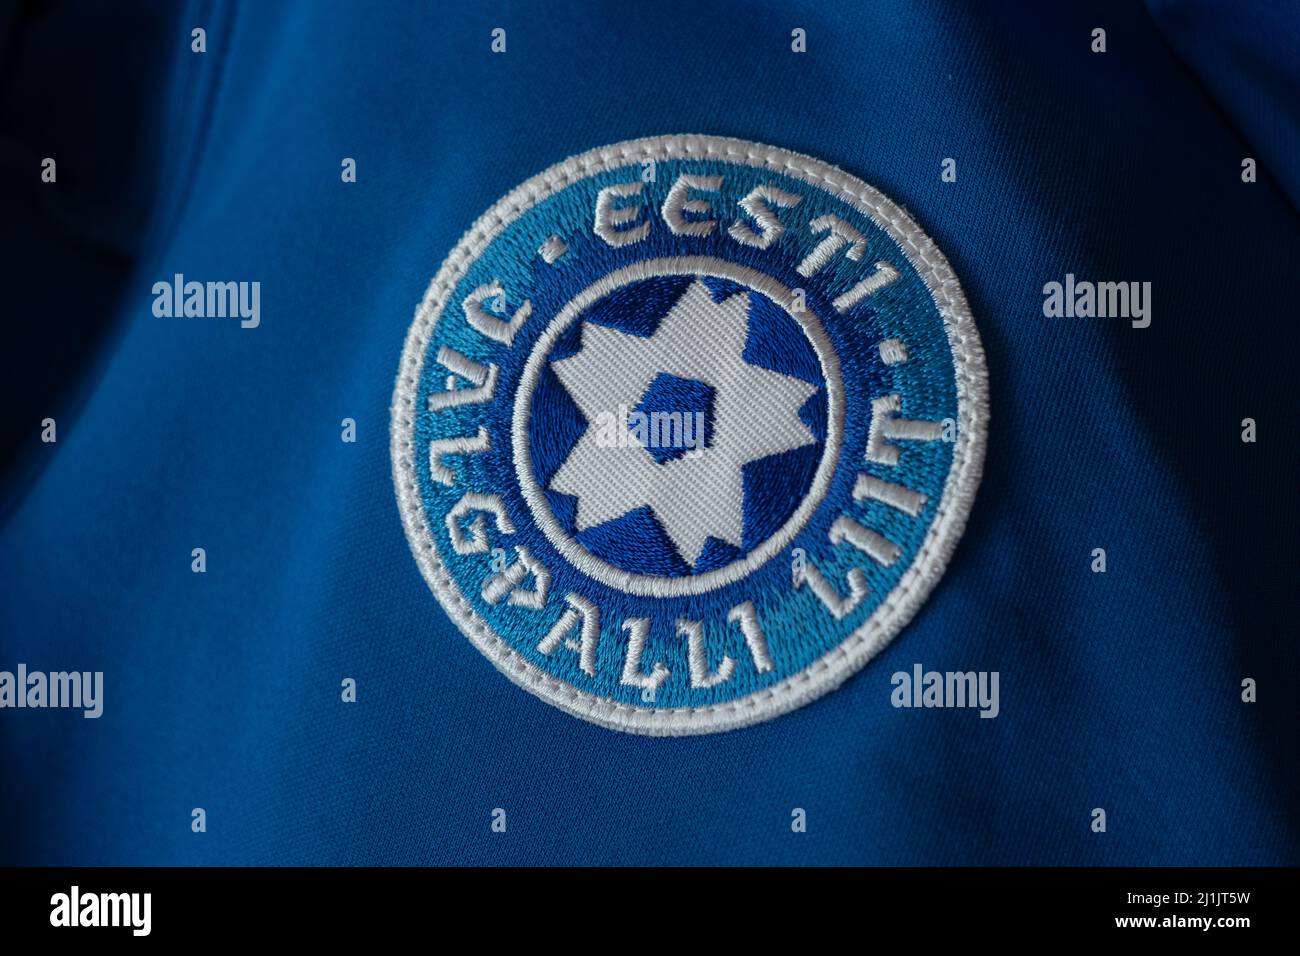 Eesti Jalgpalli Liit (Asociación de Fútbol de Estonia) emblema en una camiseta azul de la selección nacional. Logotipo de la federación de Fútbol de Estonia. Foto de stock